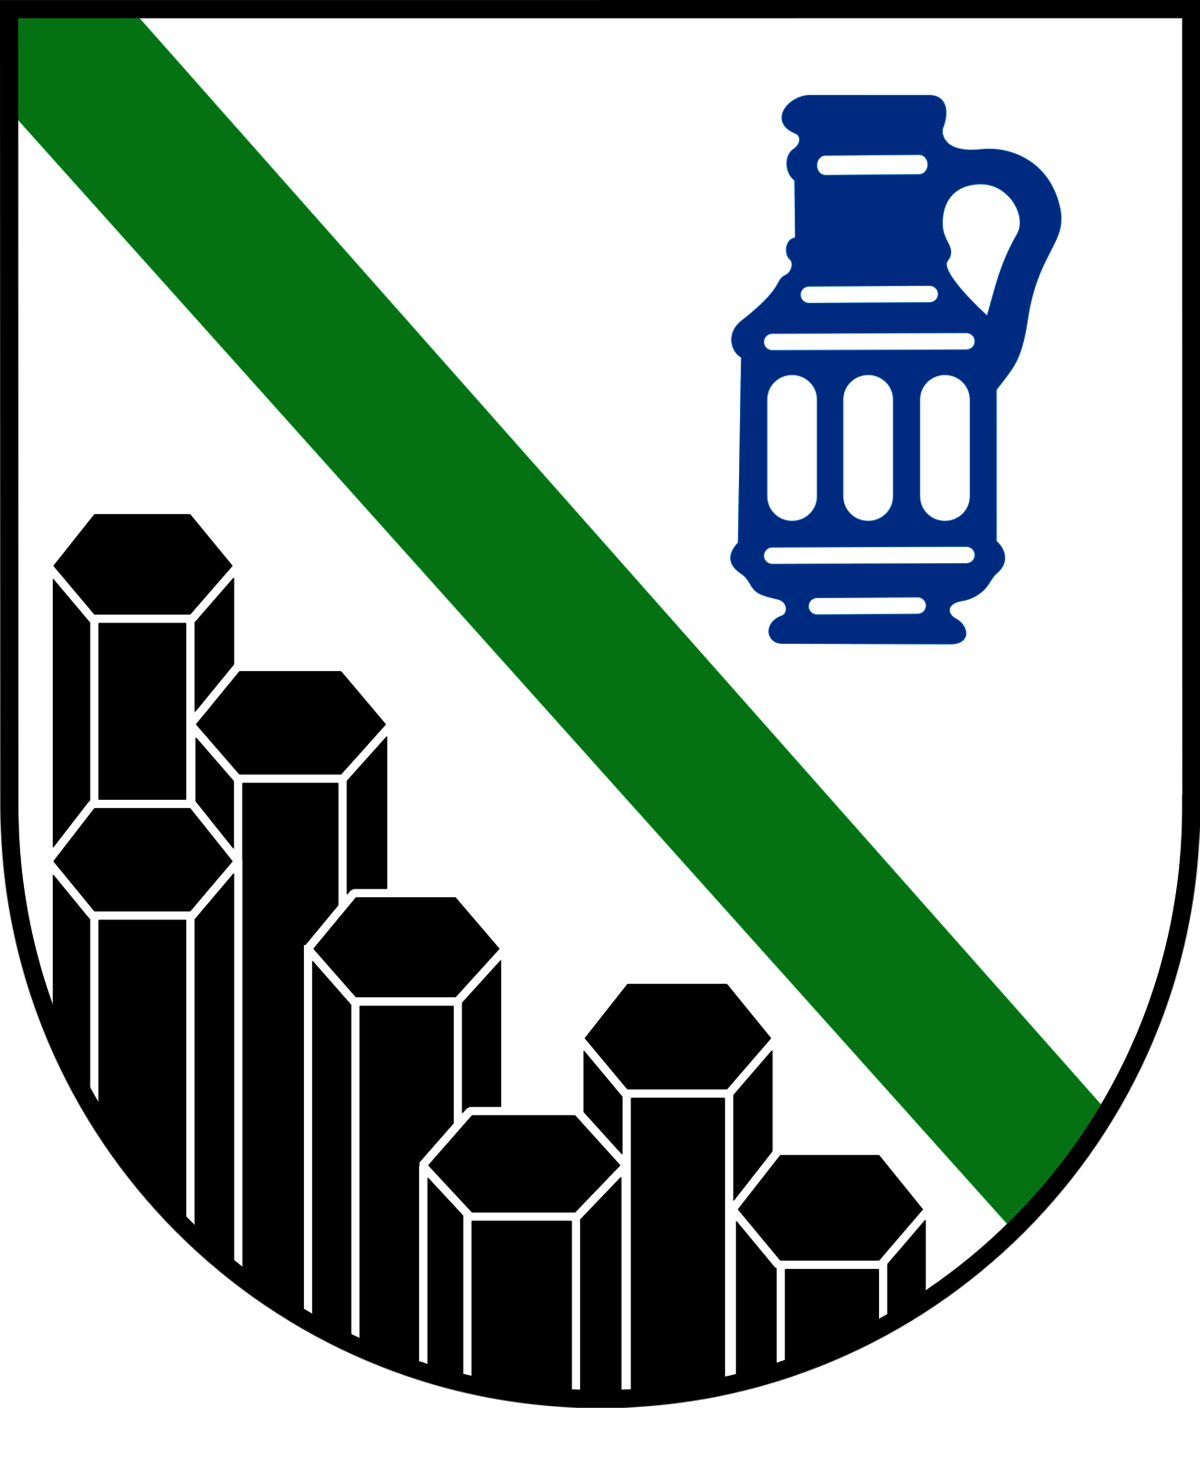 Landkreiswappen Westerwald